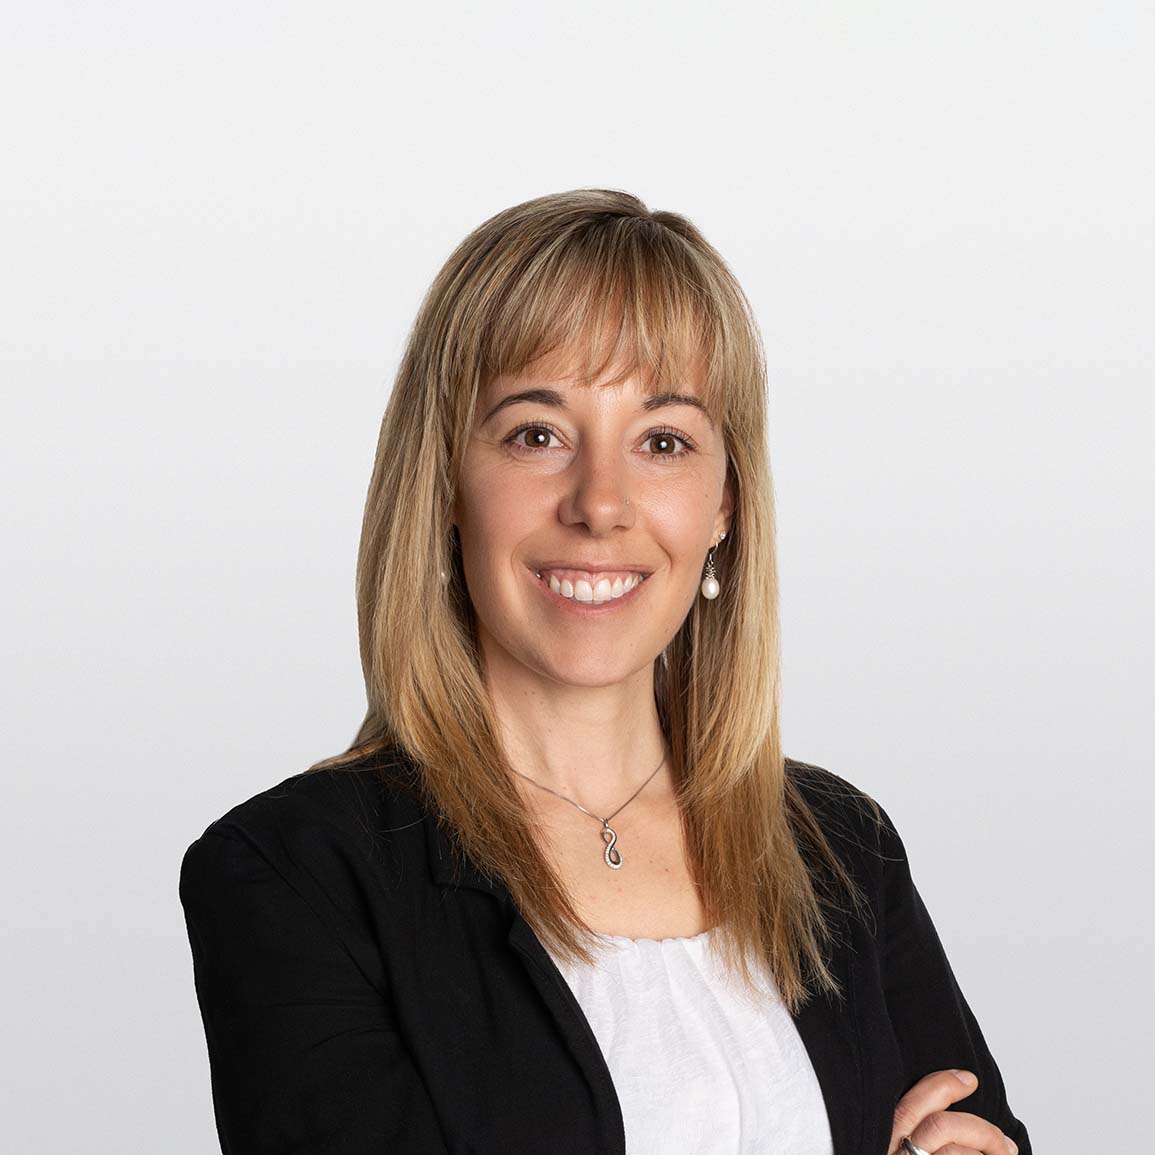 Image of Kristie Butler, financial advisor on white background.